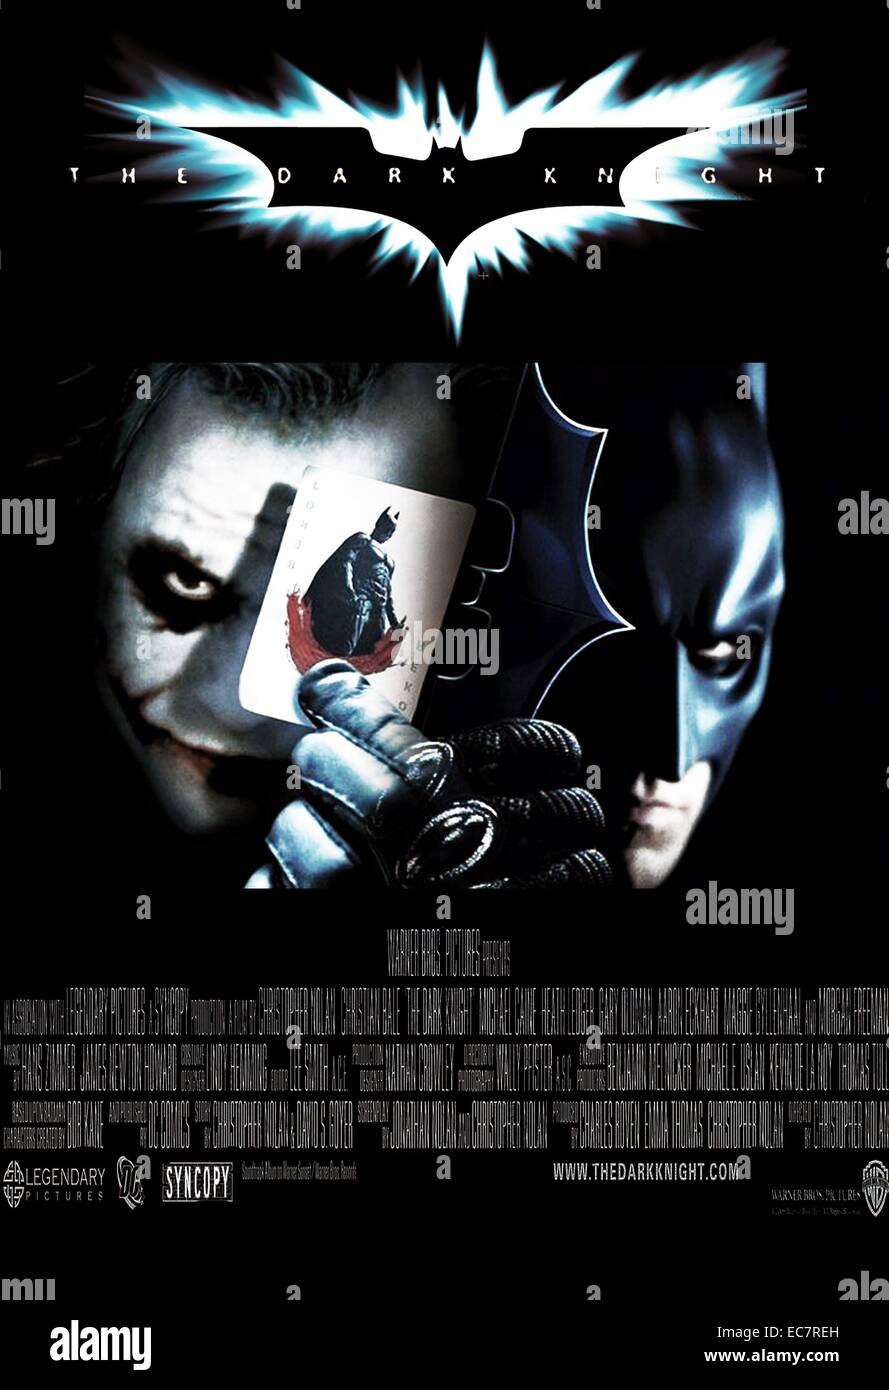 The Dark Knight ist ein 2008 britisch-amerikanische epische Superhelden Film Regie, produziert und cowritten von Christopher Nolan. Auf der Basis der DC Comics Charakter Batman, der Film ist der zweite Teil von Nolans Batman film Serie und eine Fortsetzung zu 2005 Batman Begins. Starring Christian Bale, Heath Ledger und Michael Caine. Stockfoto